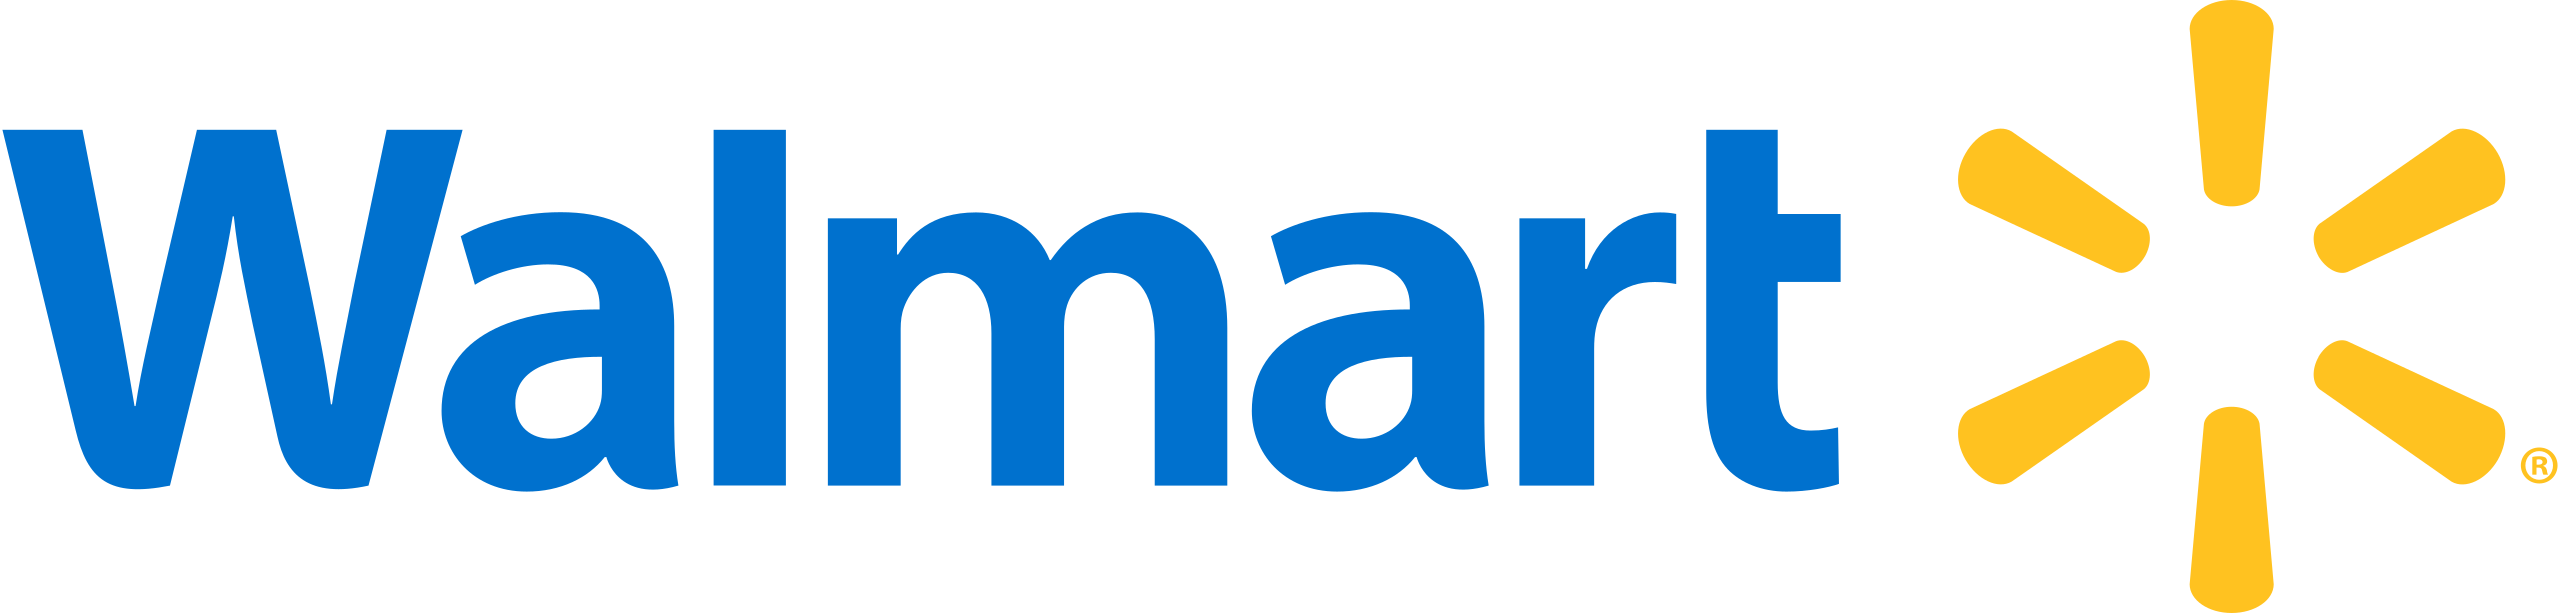 File:Walmart logo.svg - Wikipedia